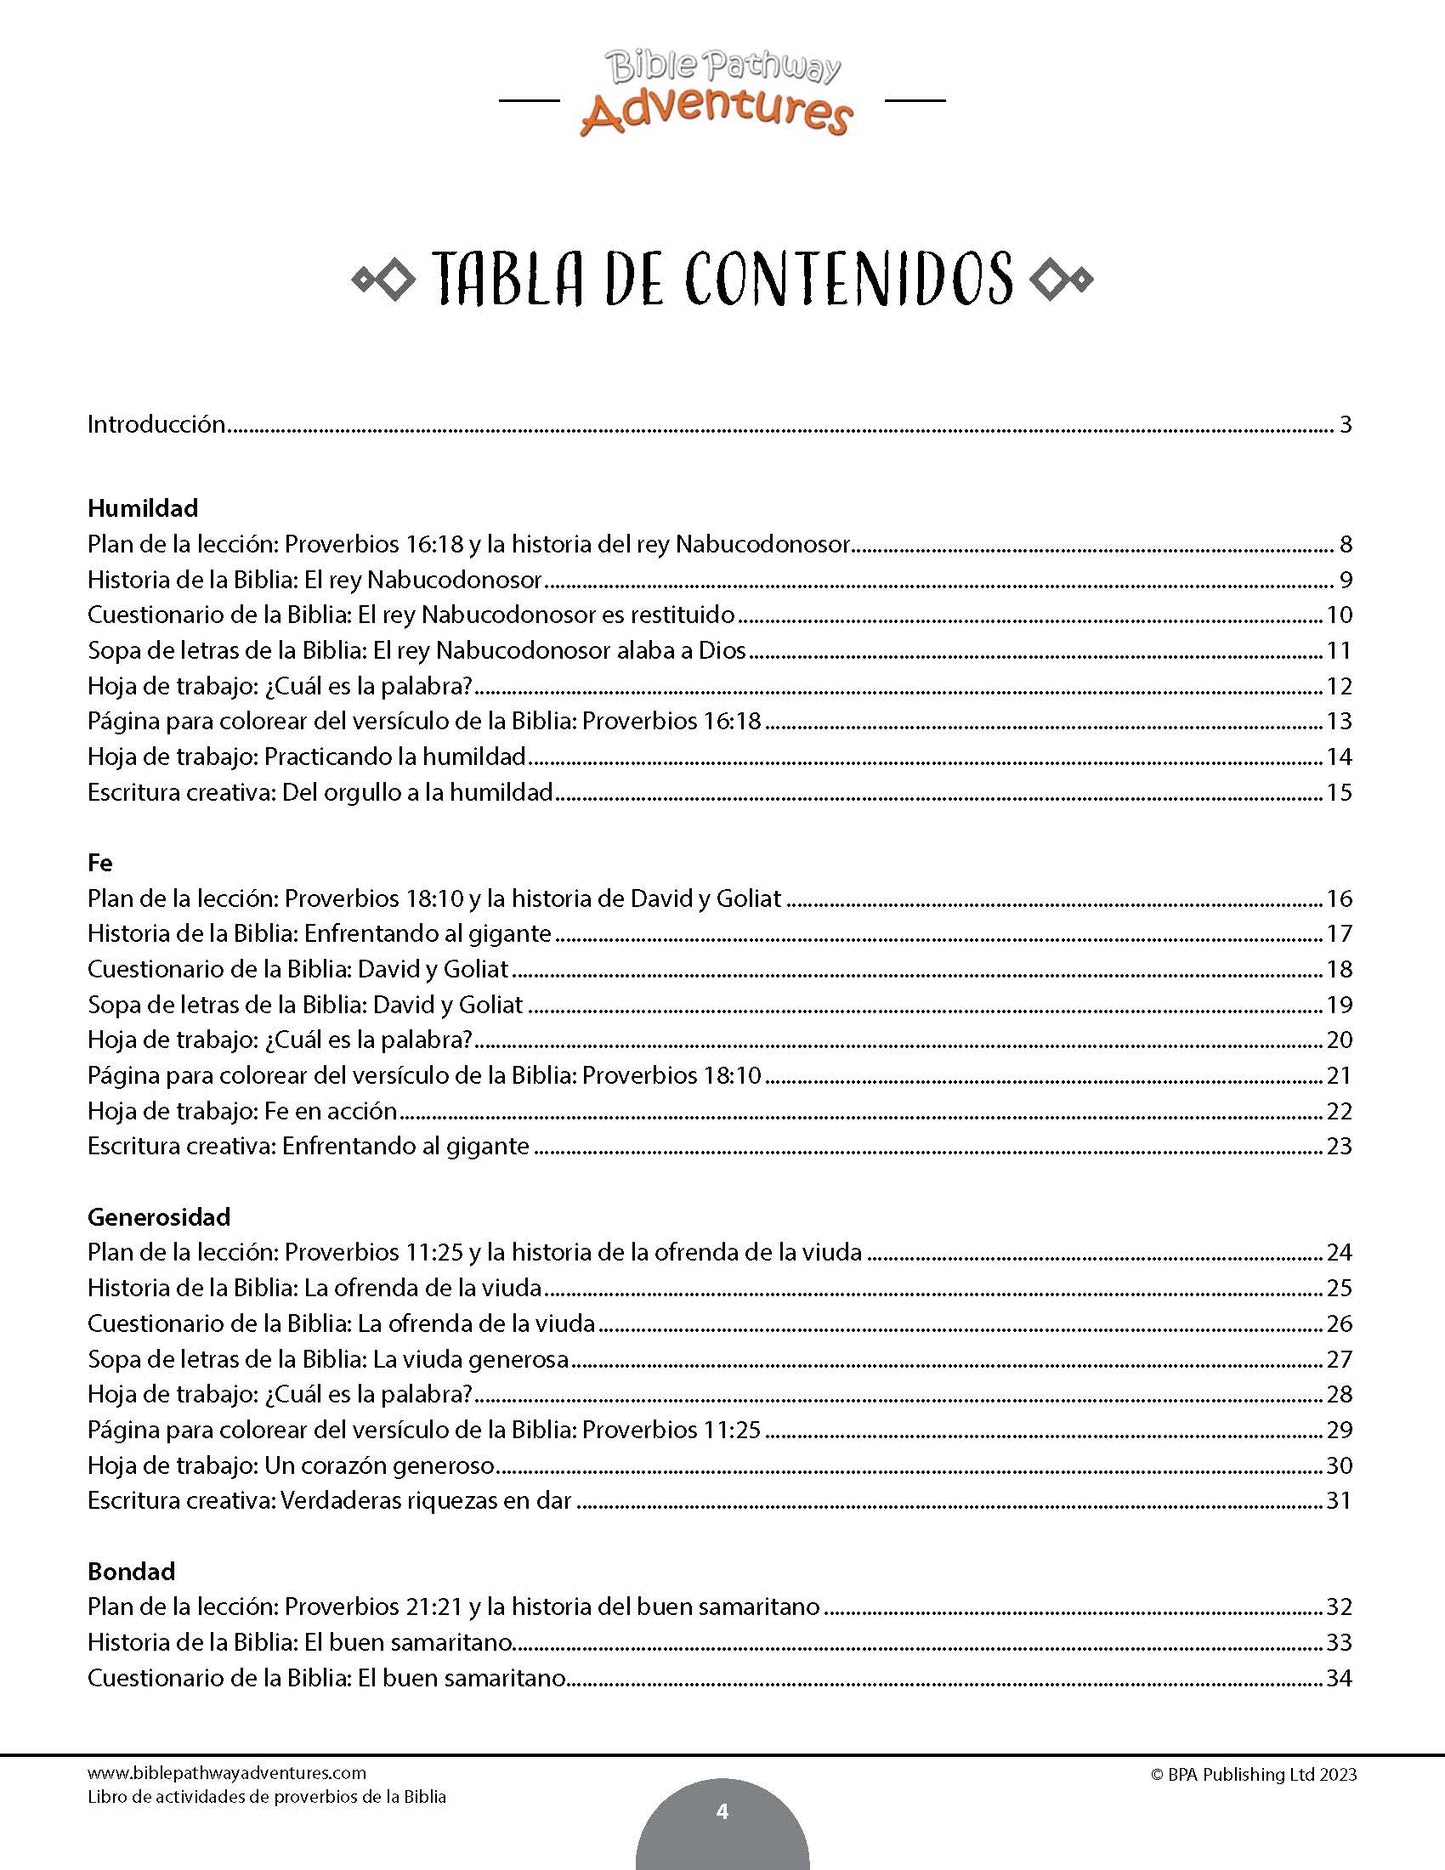 Libro de actividades de proverbios de la Biblia (PDF)